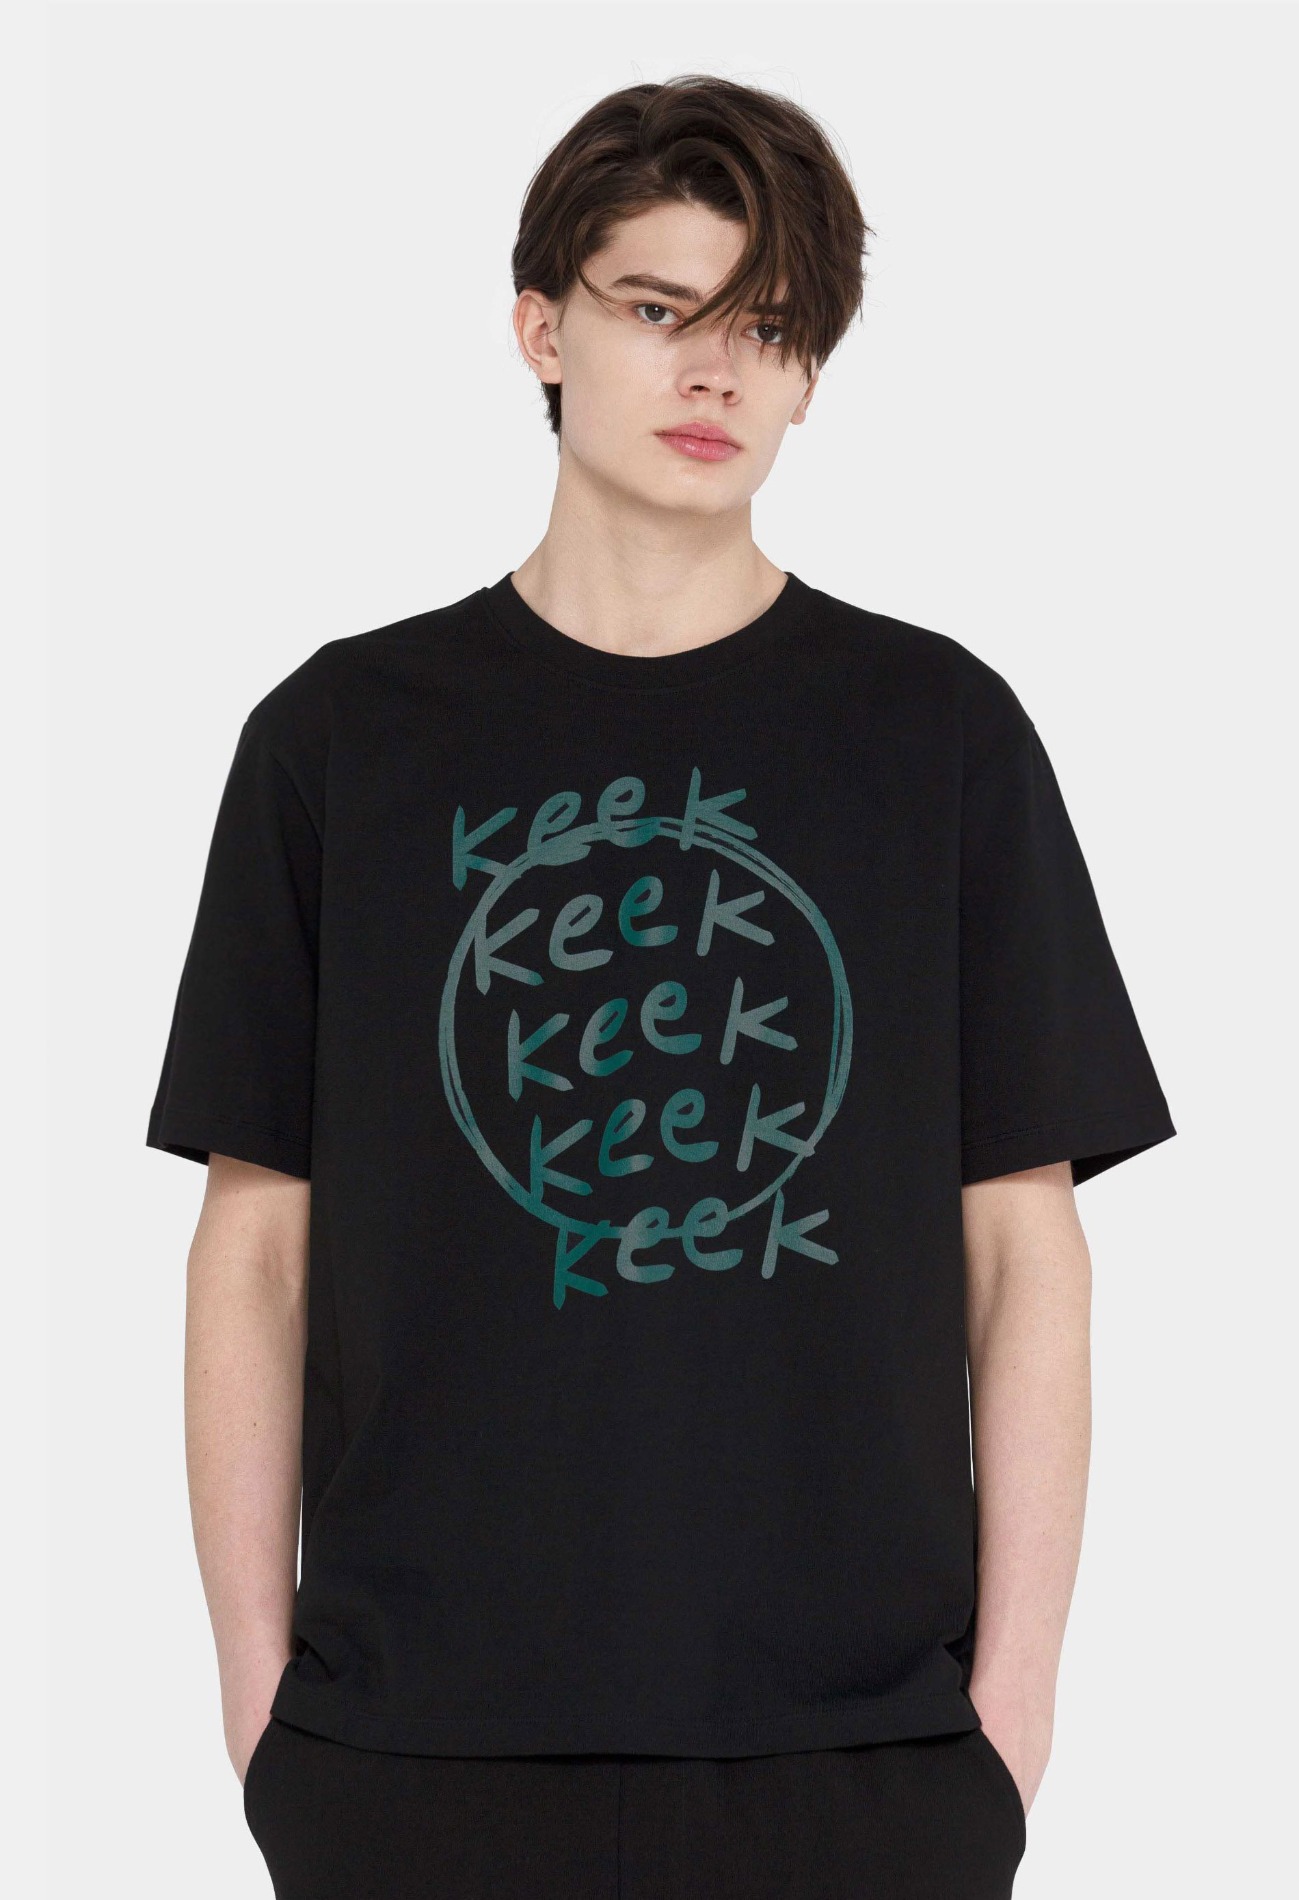 keek [Unisex] Scoring T-shirts - Black 스트릿패션 유니섹스브랜드 커플시밀러룩 남자쇼핑몰 여성의류쇼핑몰 후드티 힙색